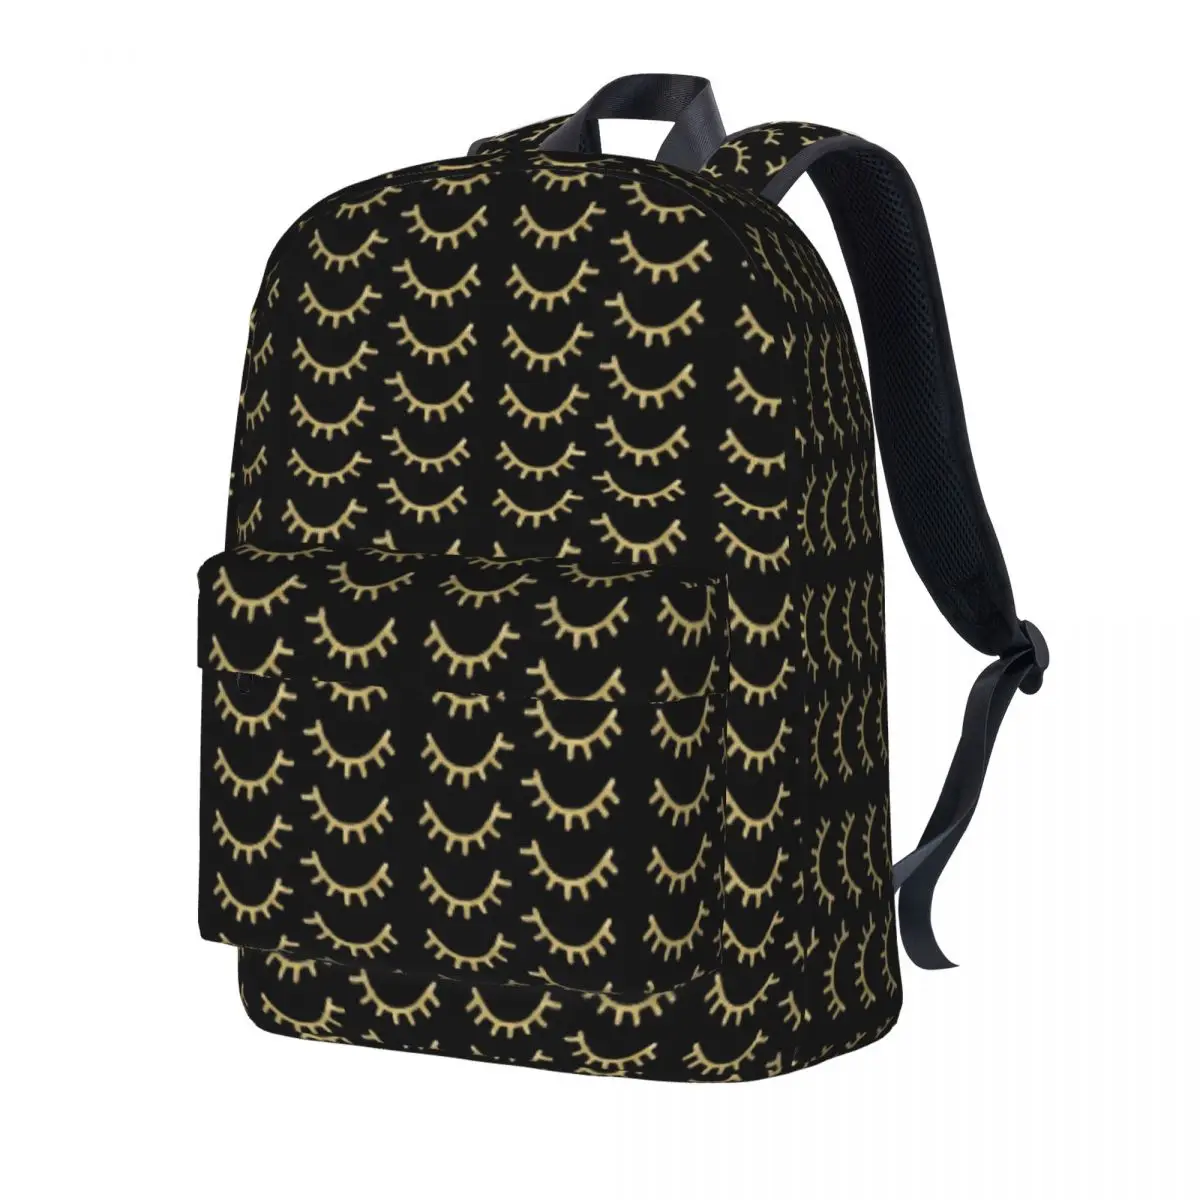 

Рюкзак с золотыми ресницами и принтом в виде сонных глаз, большой школьный рюкзак для мальчиков и девочек